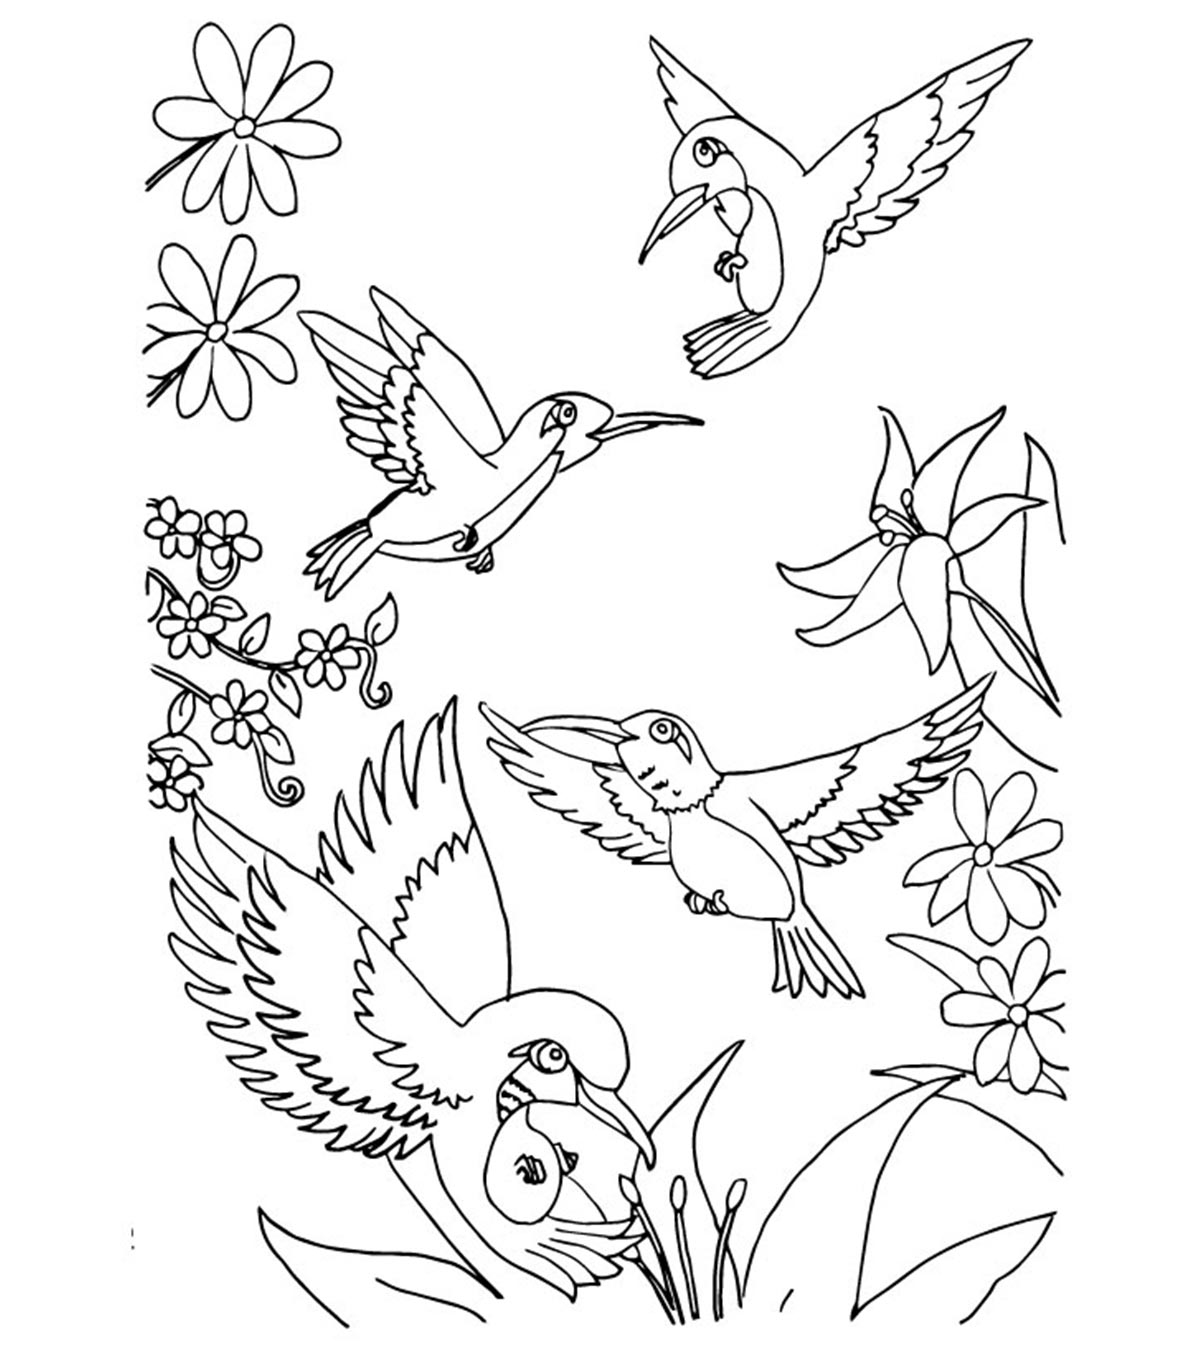 Cách vẽ một con vẹt - Hướng dẫn vẽ dễ dàng từng bước - Cách vẽ